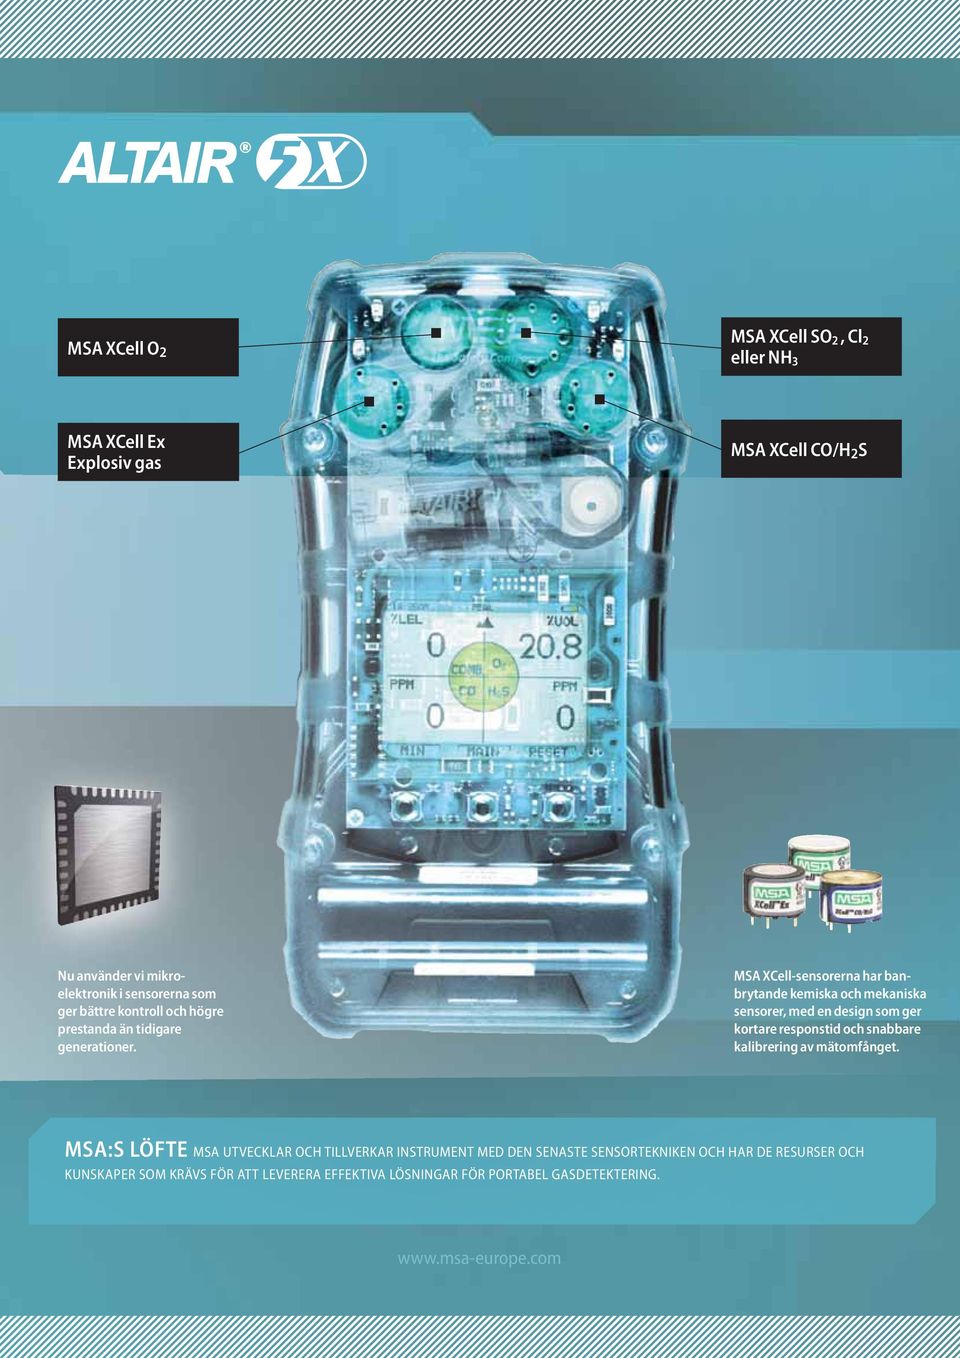 MSA XCell-sensorerna har ban - brytande kemiska och mekaniska sensorer, med en design som ger kortare responstid och snabbare kalibrering av